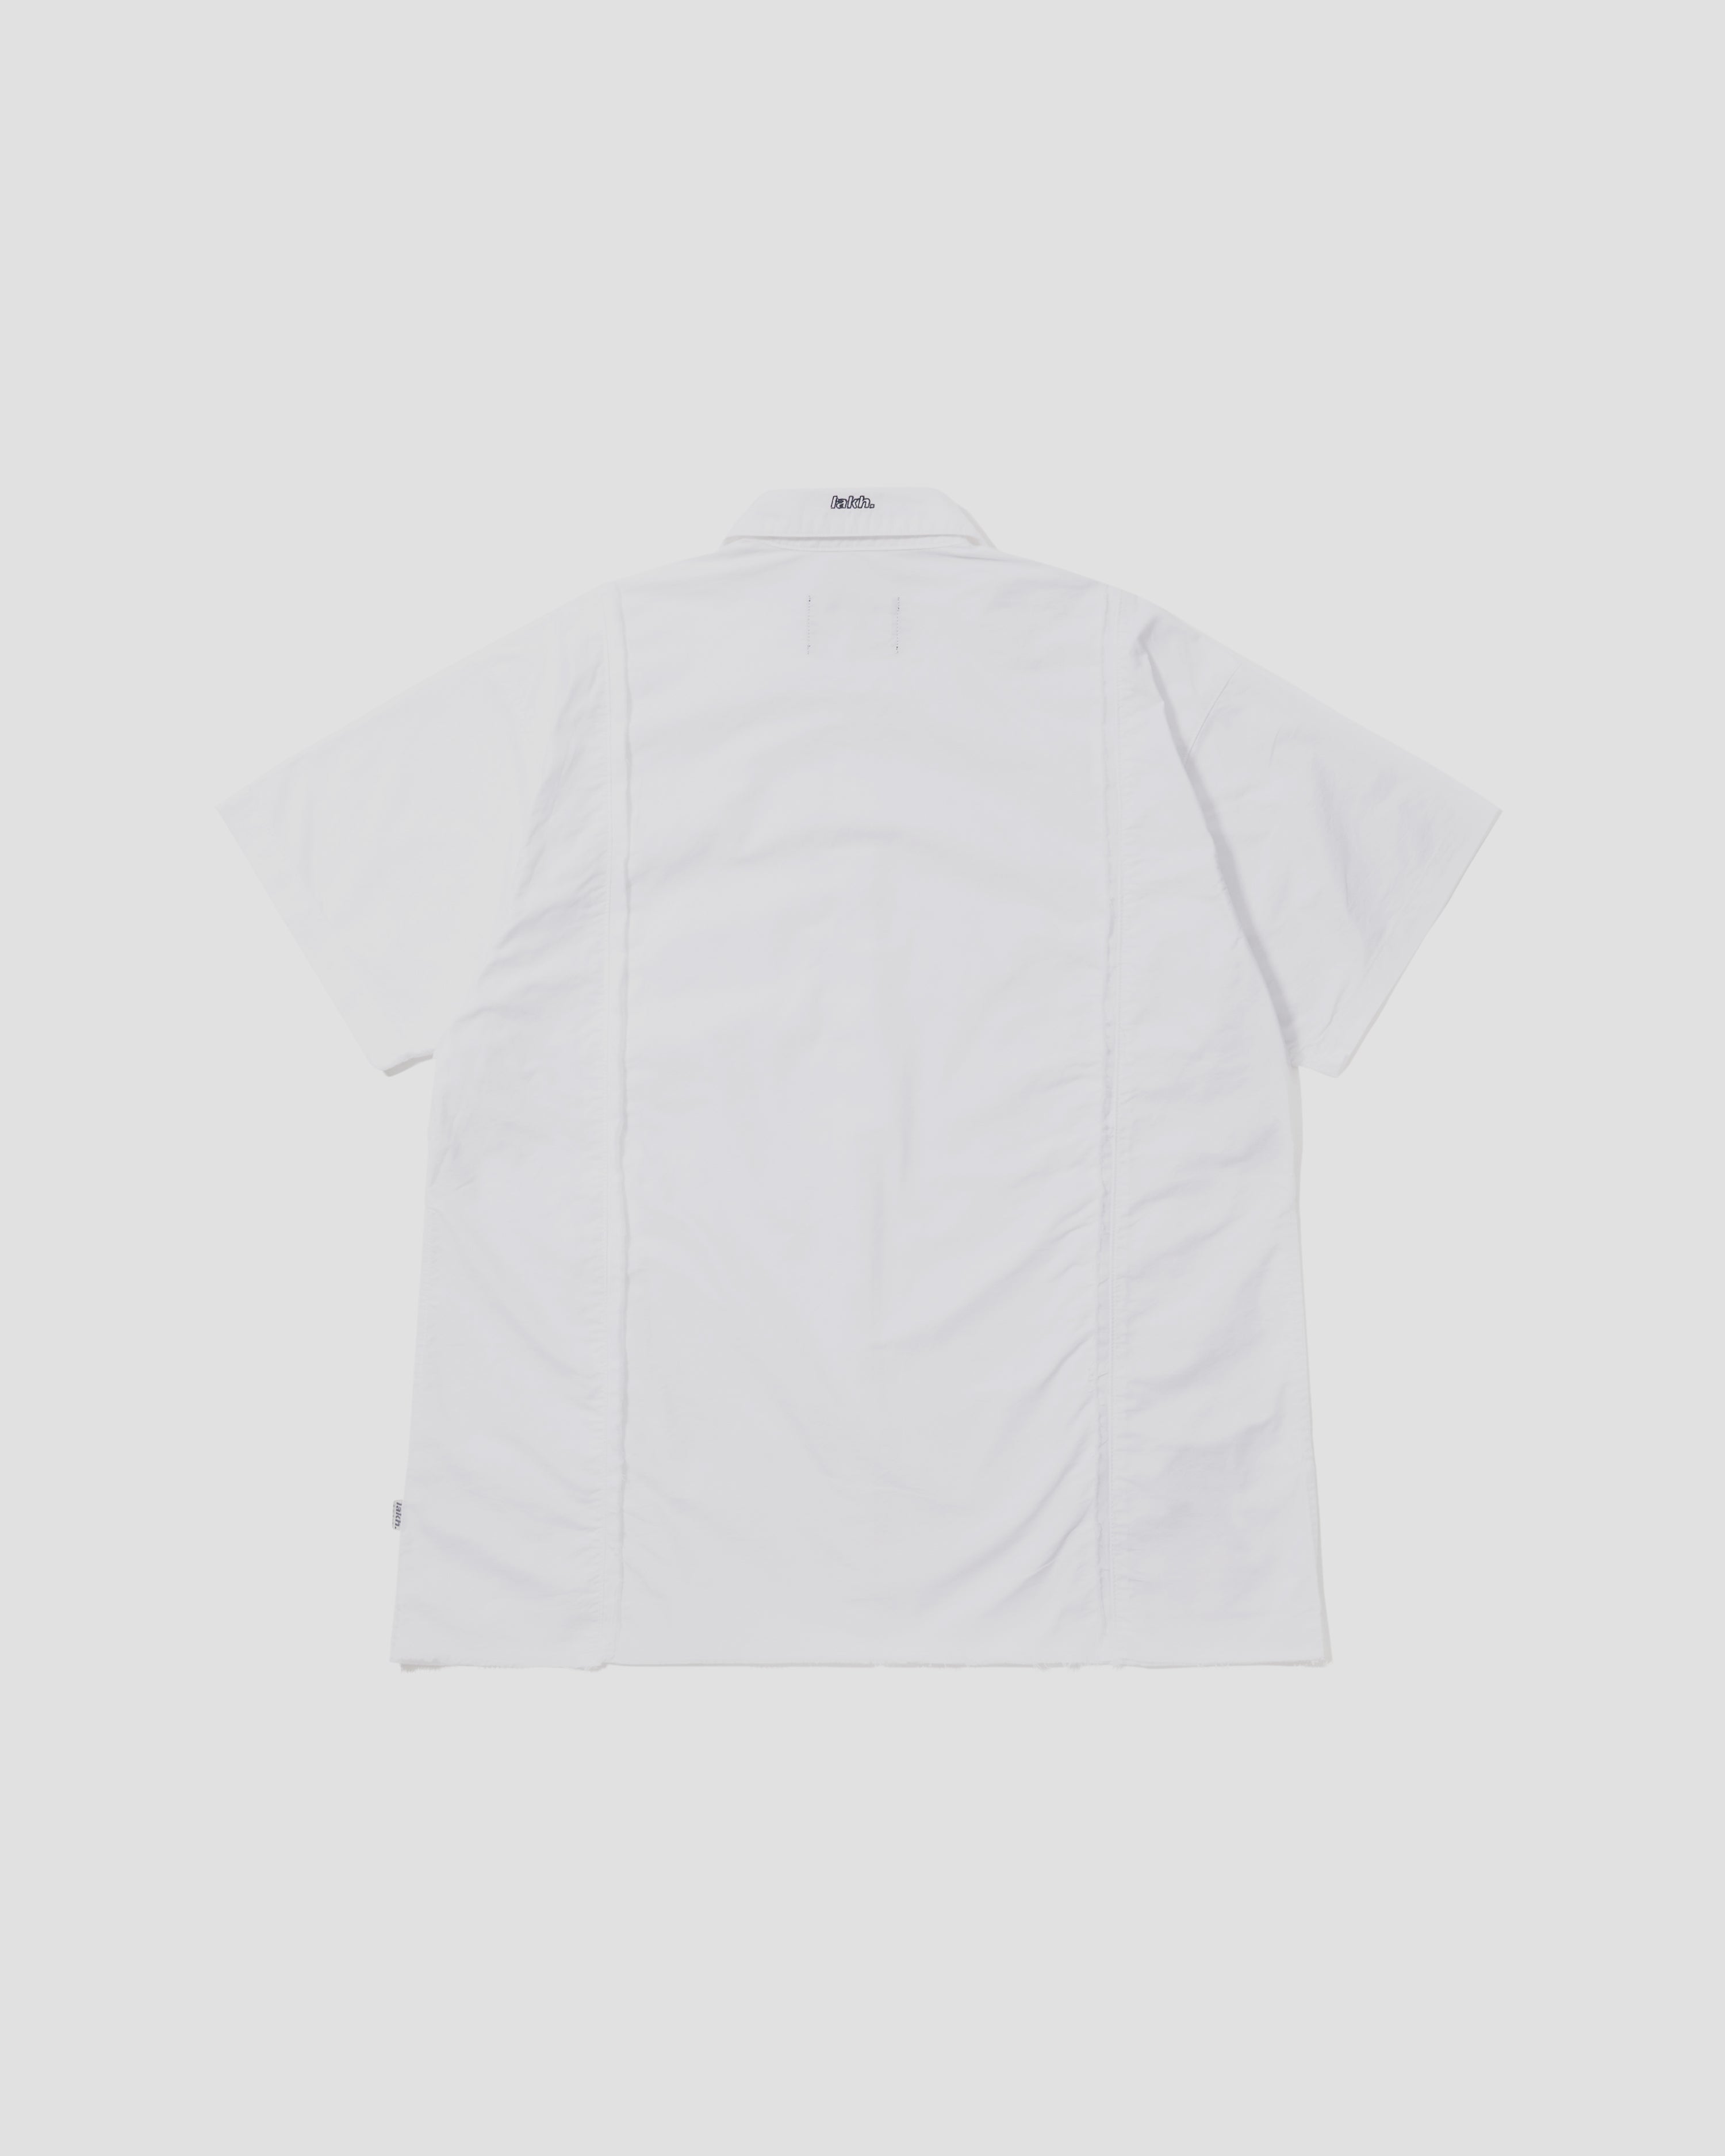 S/S Raw Edge Shirt - White